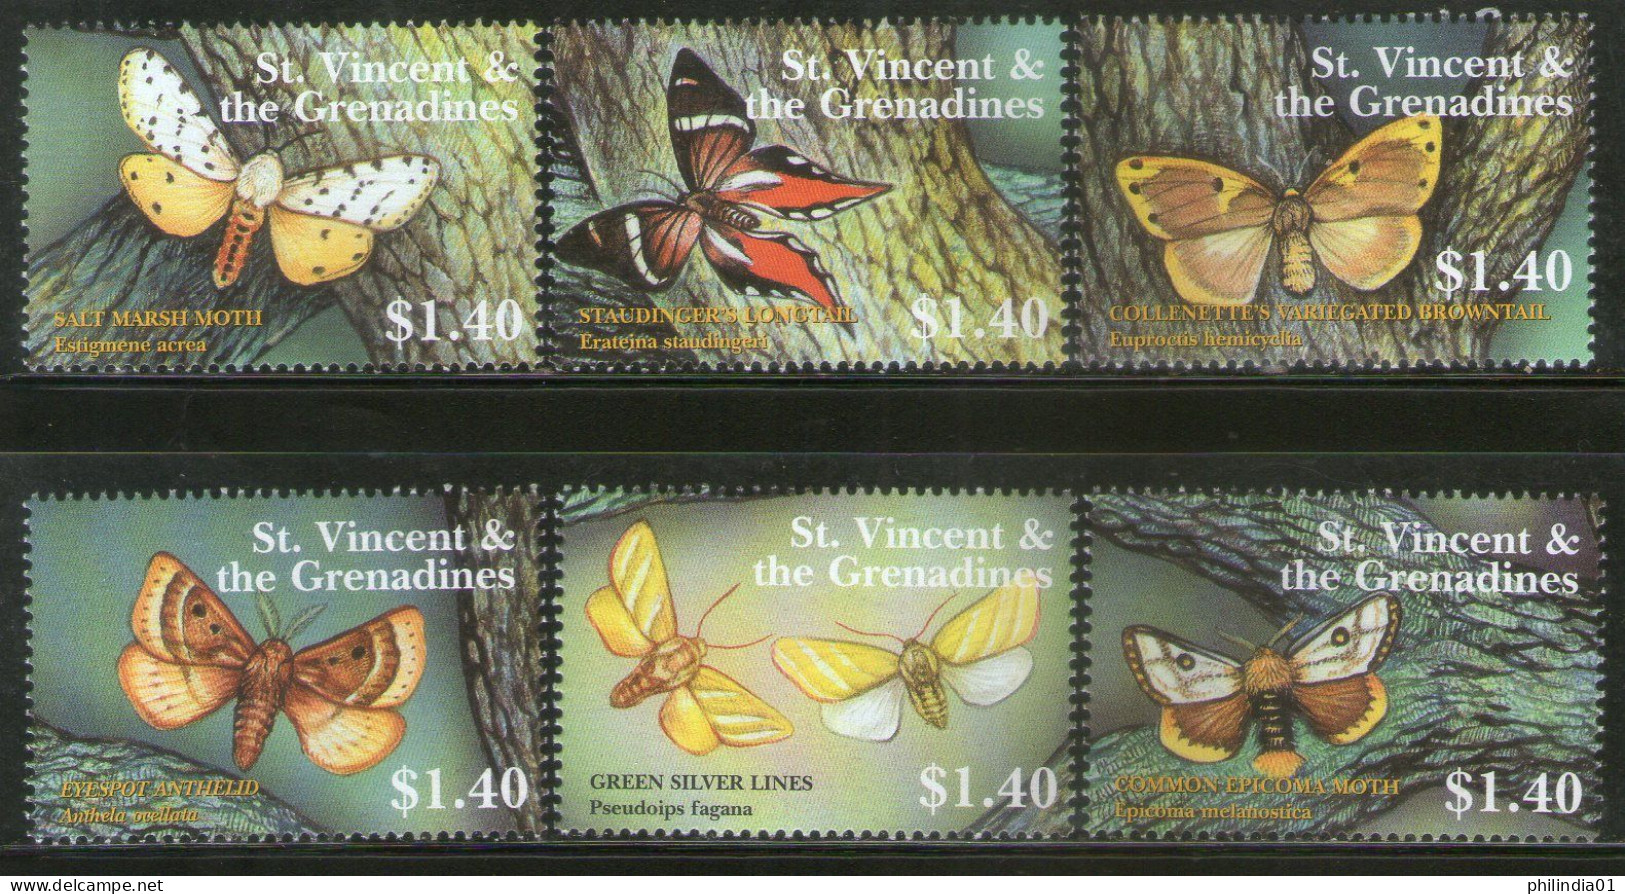 St. Vincent 2001 Butterflies Moths Insect Sc 3000 6v MNH # 651 - Butterflies